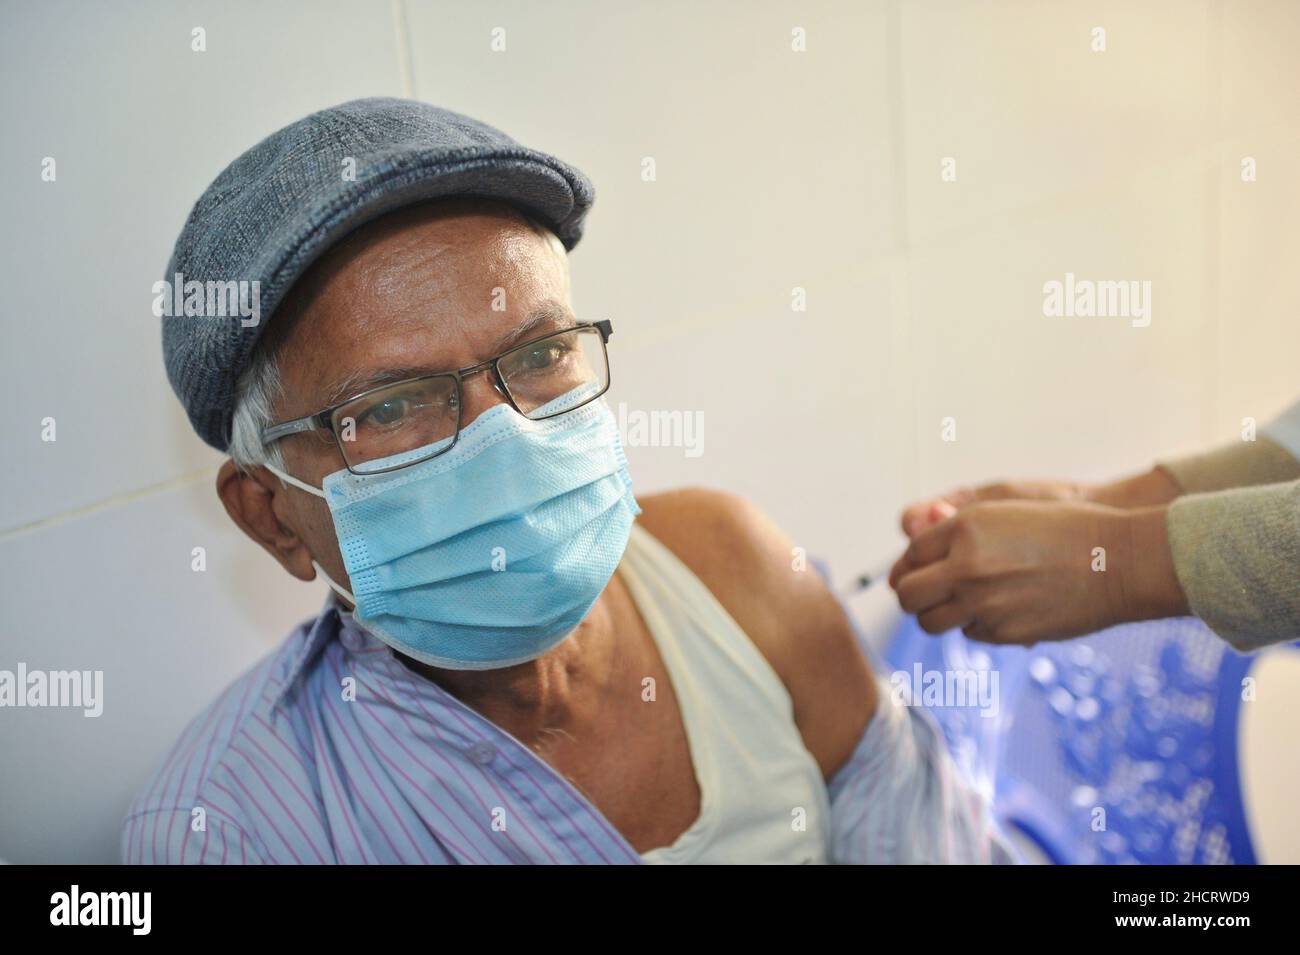 Un aîné reçoit le vaccin de rappel Pfizer contre la maladie de Covid-19 au centre de vaccination de l'hôpital et du collège médical M A G Osmani pendant la campagne de vaccination de rappel COVID-19 afin d'intensifier ses efforts pour contenir la propagation du virus mortel.Le 30 décembre 2021 à Sylhet, Bangladesh.(Photo de MD Rafayat Haque Khan/Eyepix Group) Banque D'Images